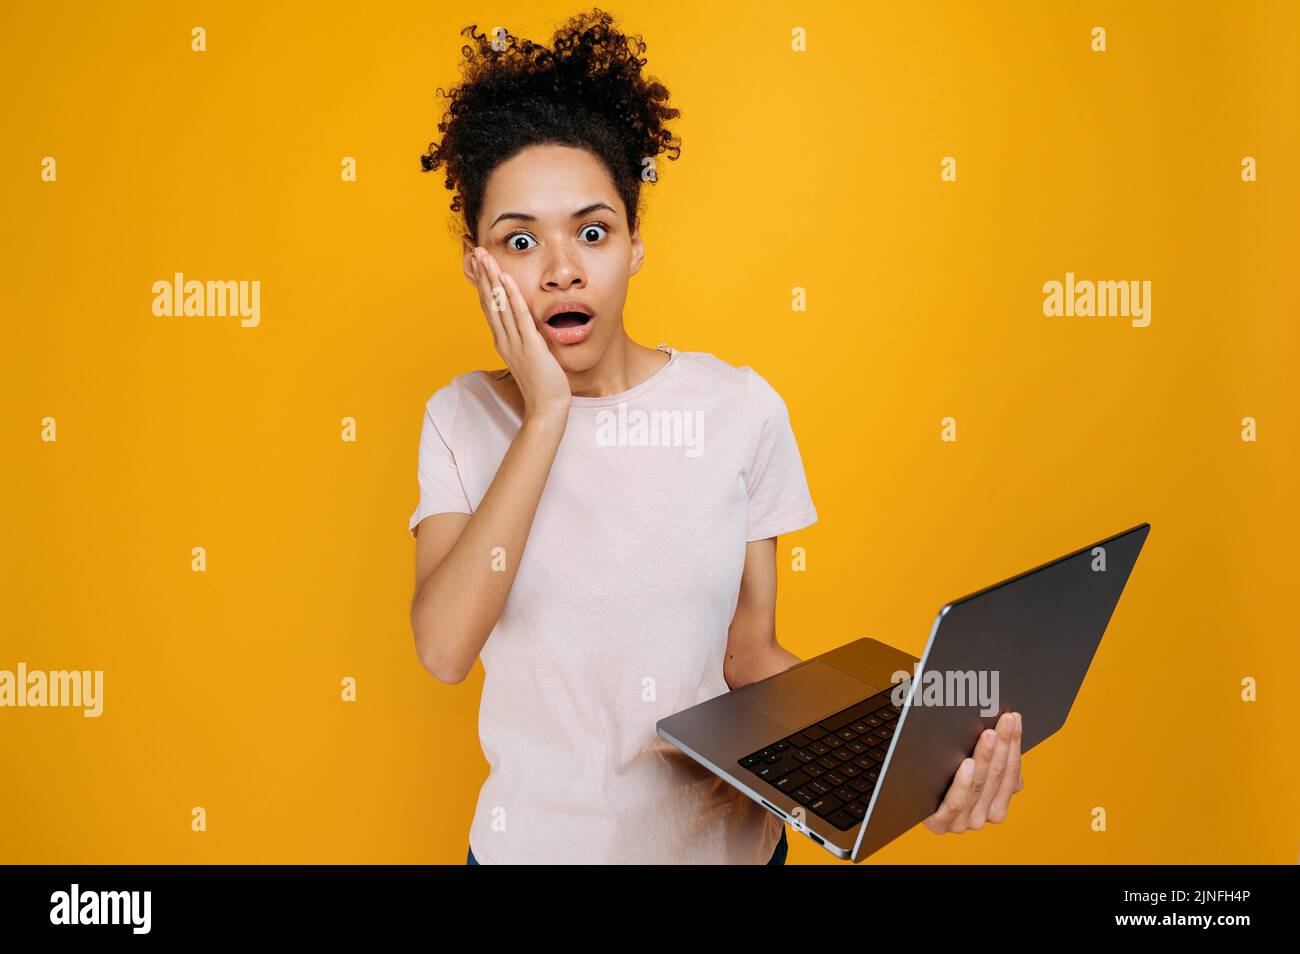 Schockierte afroamerikanische junge Frau mit lockigen Haaren, hält einen offenen Laptop in der Hand, schaut in atemberaubender Form auf die Kamera, erhält unerwartete Informationen, steht über isoliertem orangefarbenem Hintergrund, emotionaler Ausdruck Stockfoto